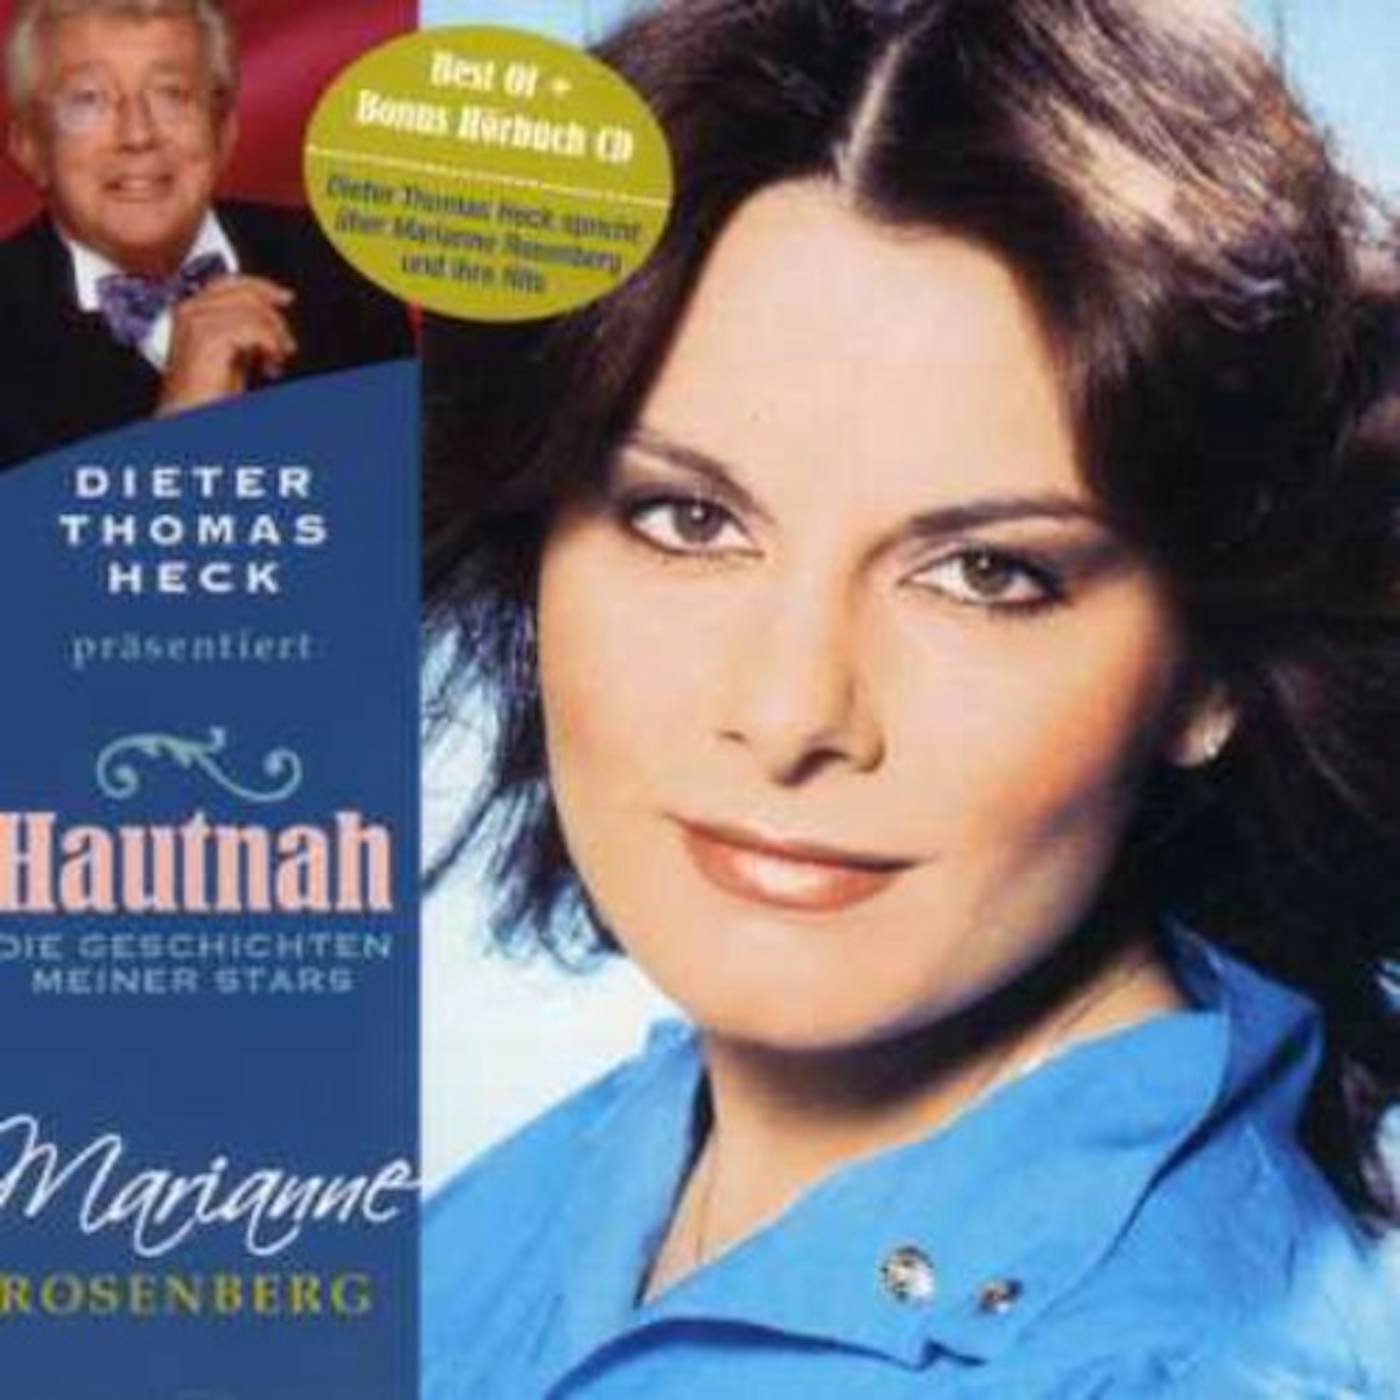 Marianne Rosenberg HAUTNAH DIE GESCHICHTEN MEINER STARS CD